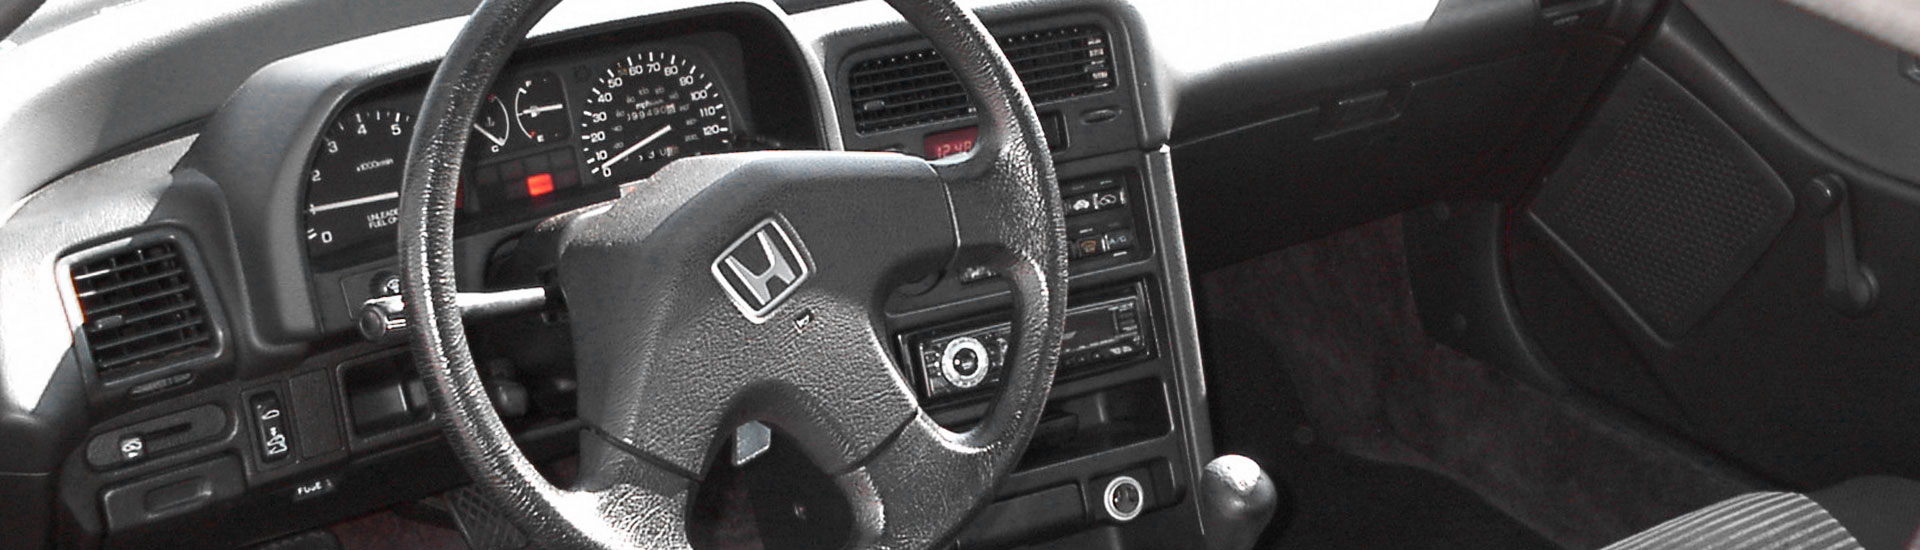 Honda CRX Custom Dash Kits